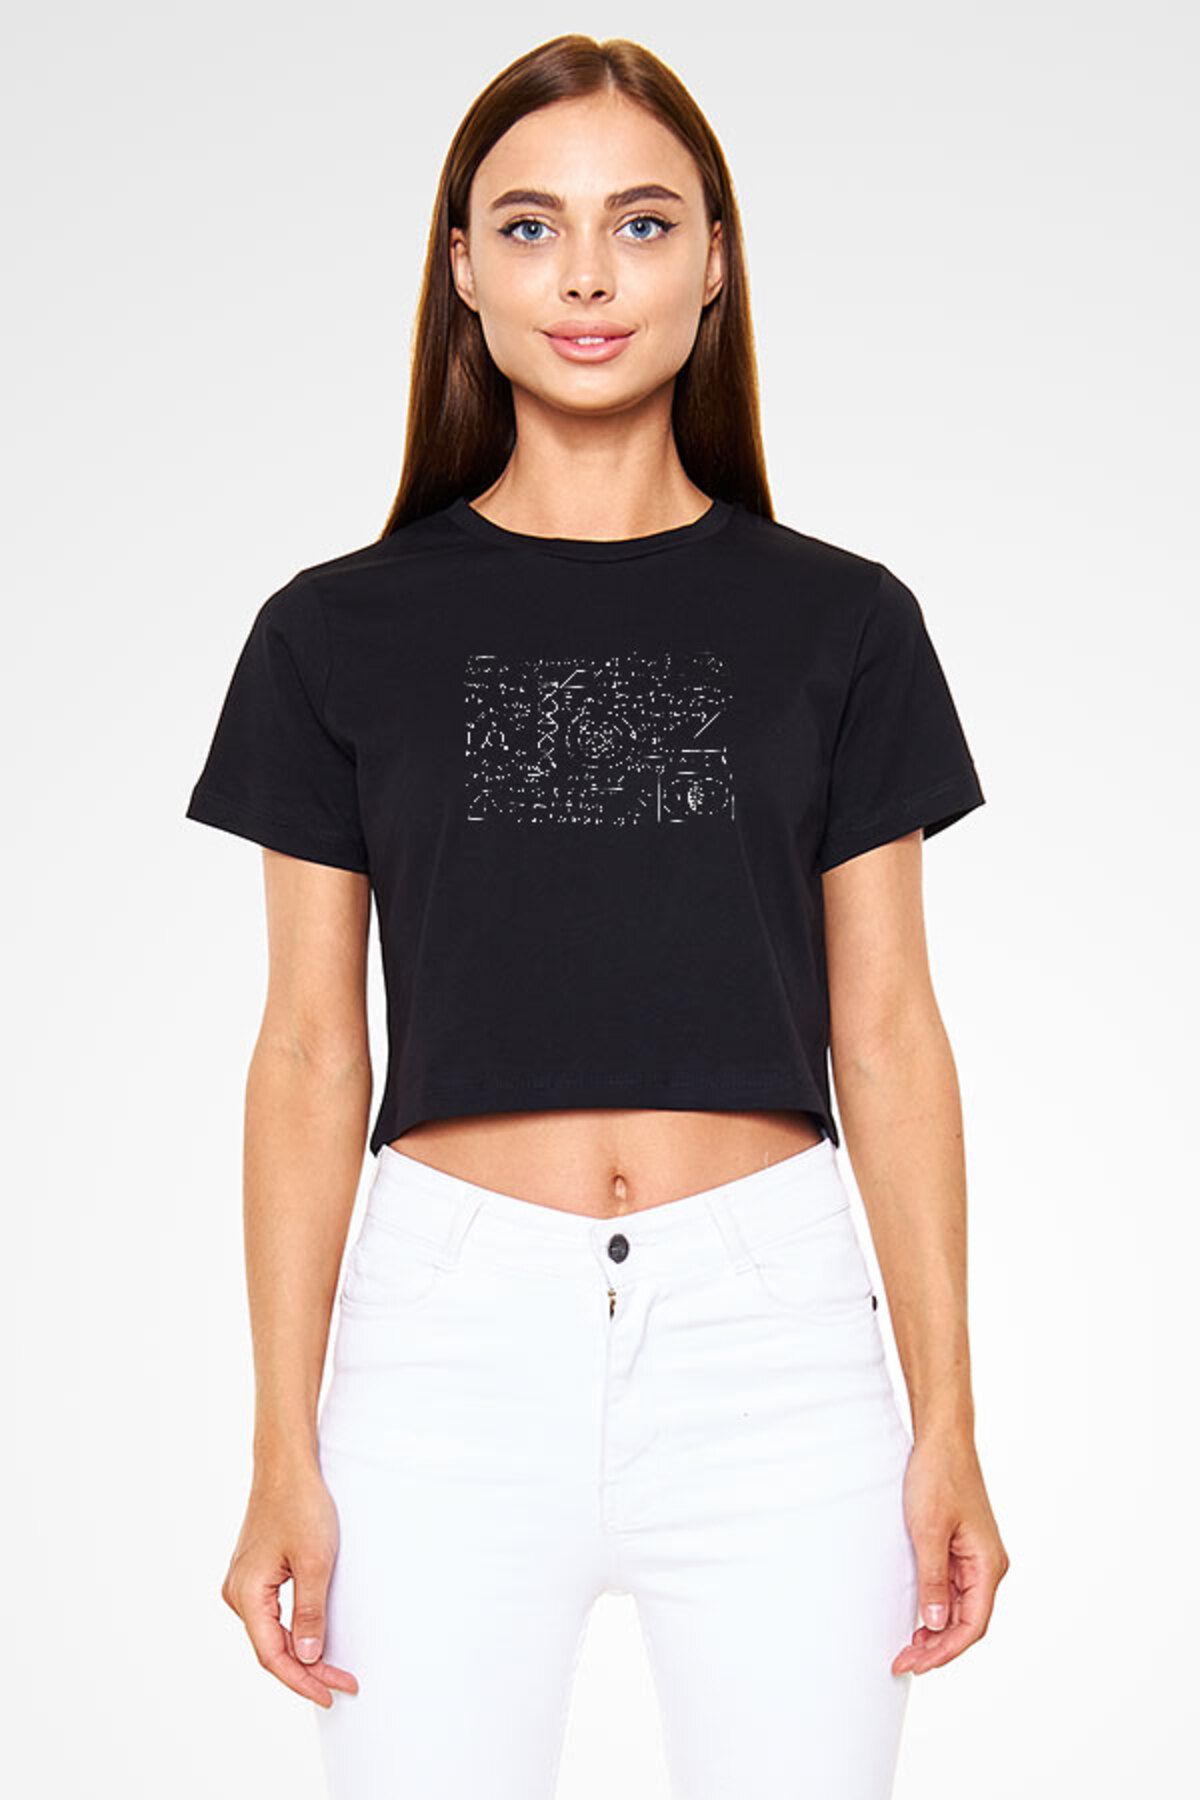 Darkhane Kimya Fizik Matematik Denklemleri Siyah Unisex Crop Top Tişört T-Shirt